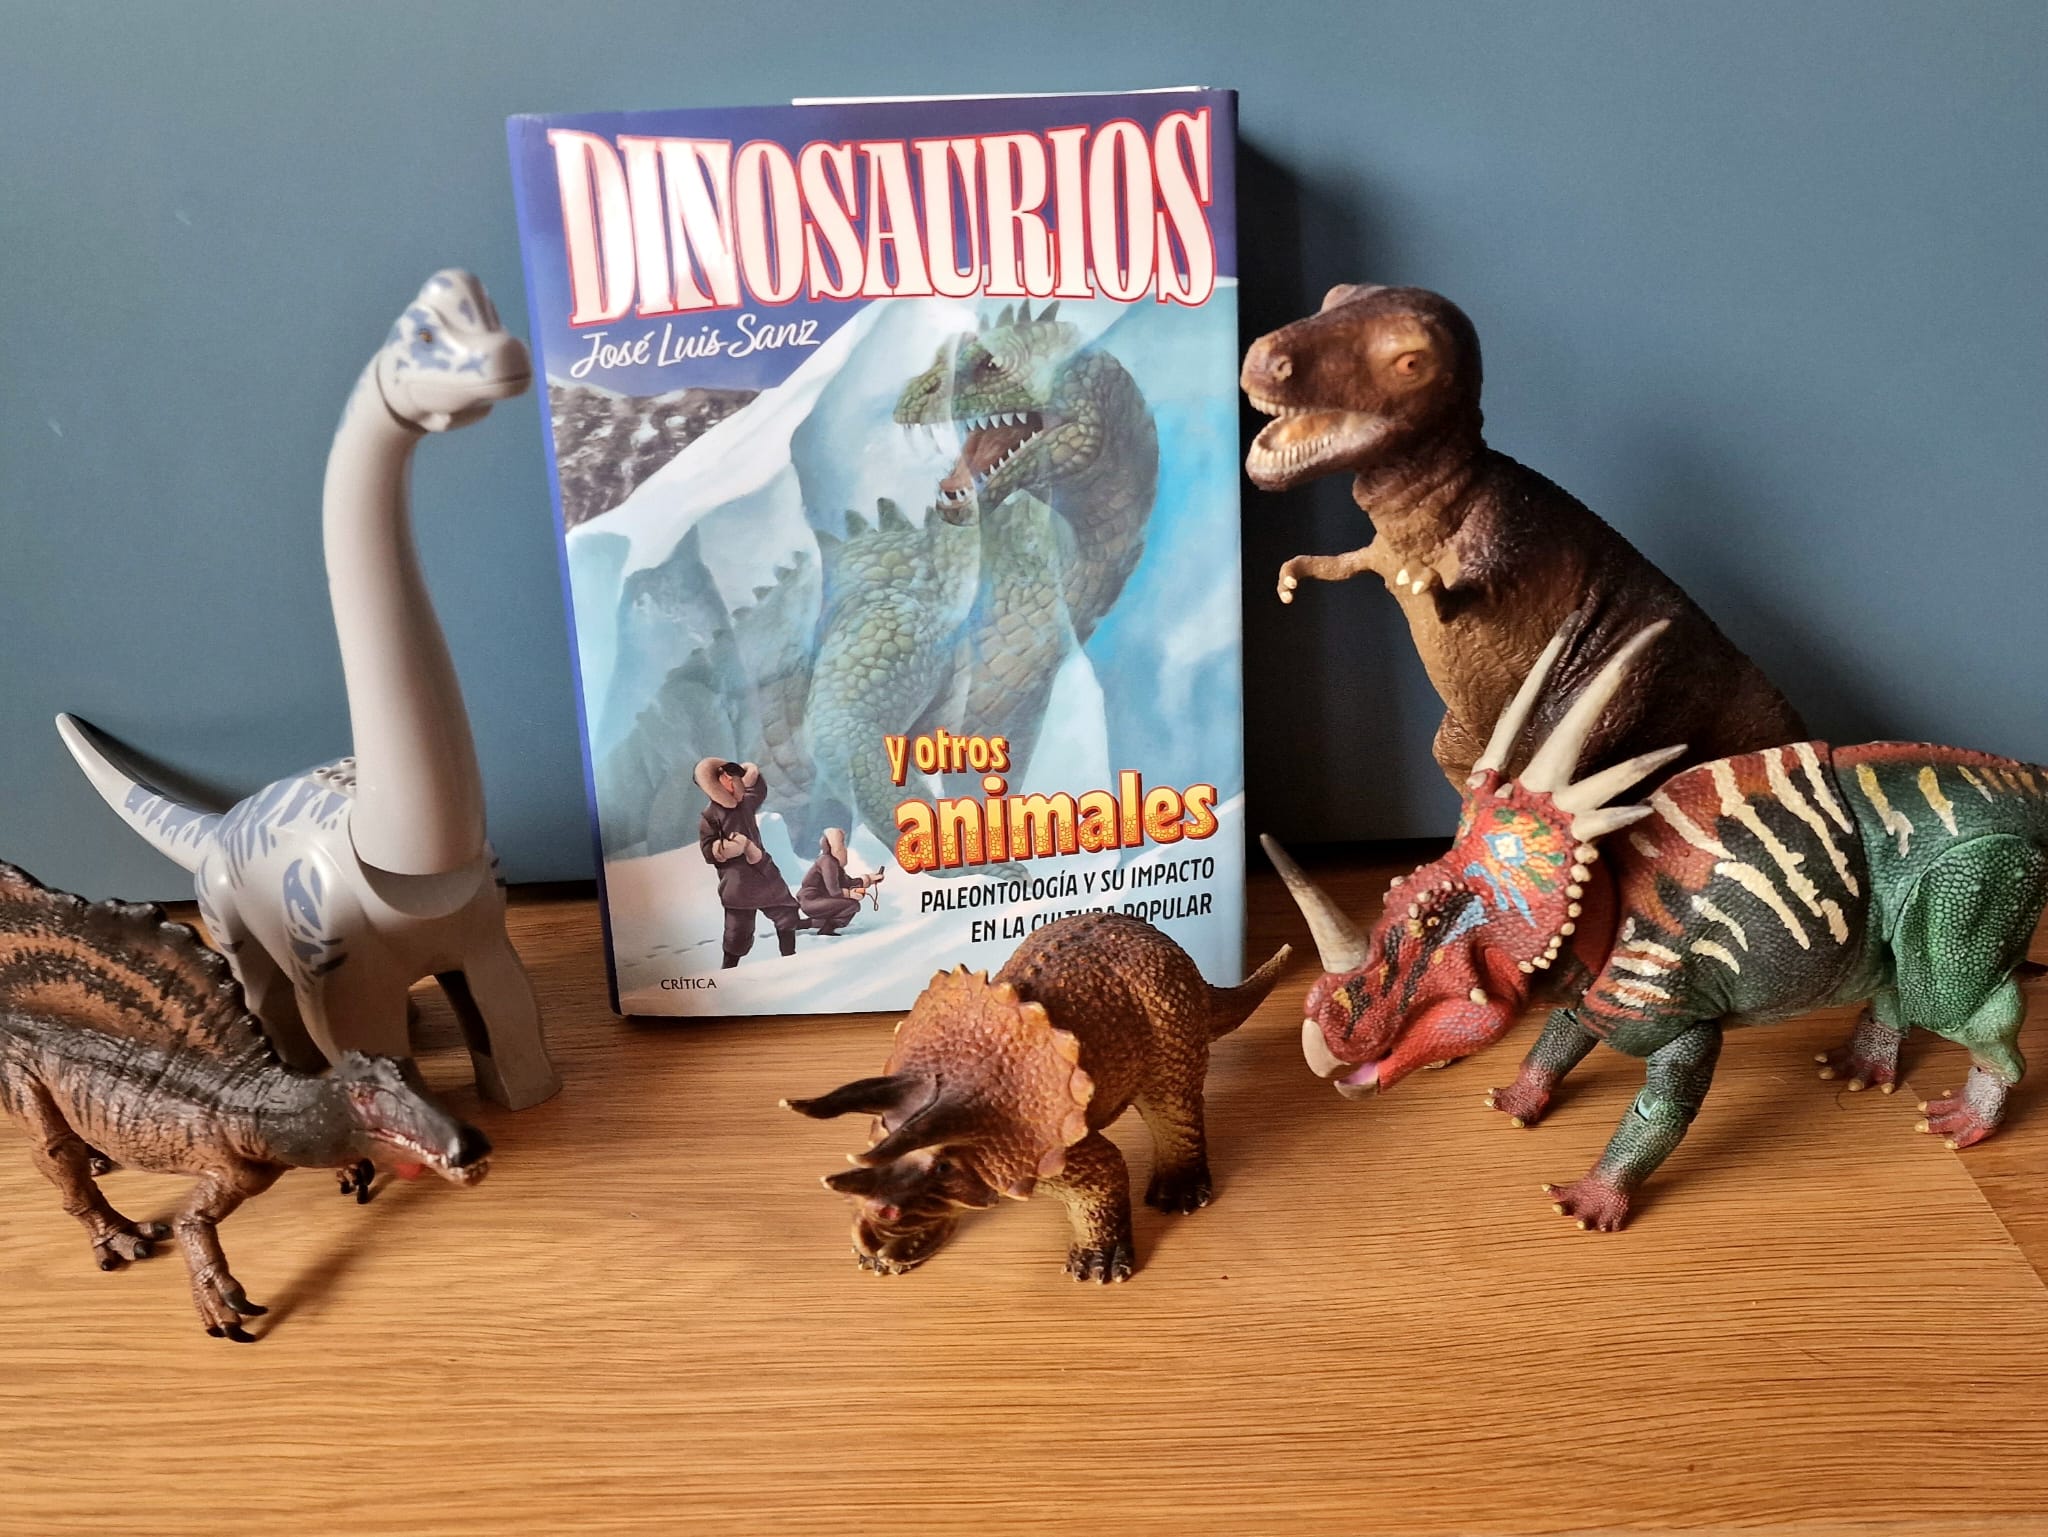 José Luis Sanz libro Dinosaurios y otros animales. Paleontología y su impacto en la cultura popular